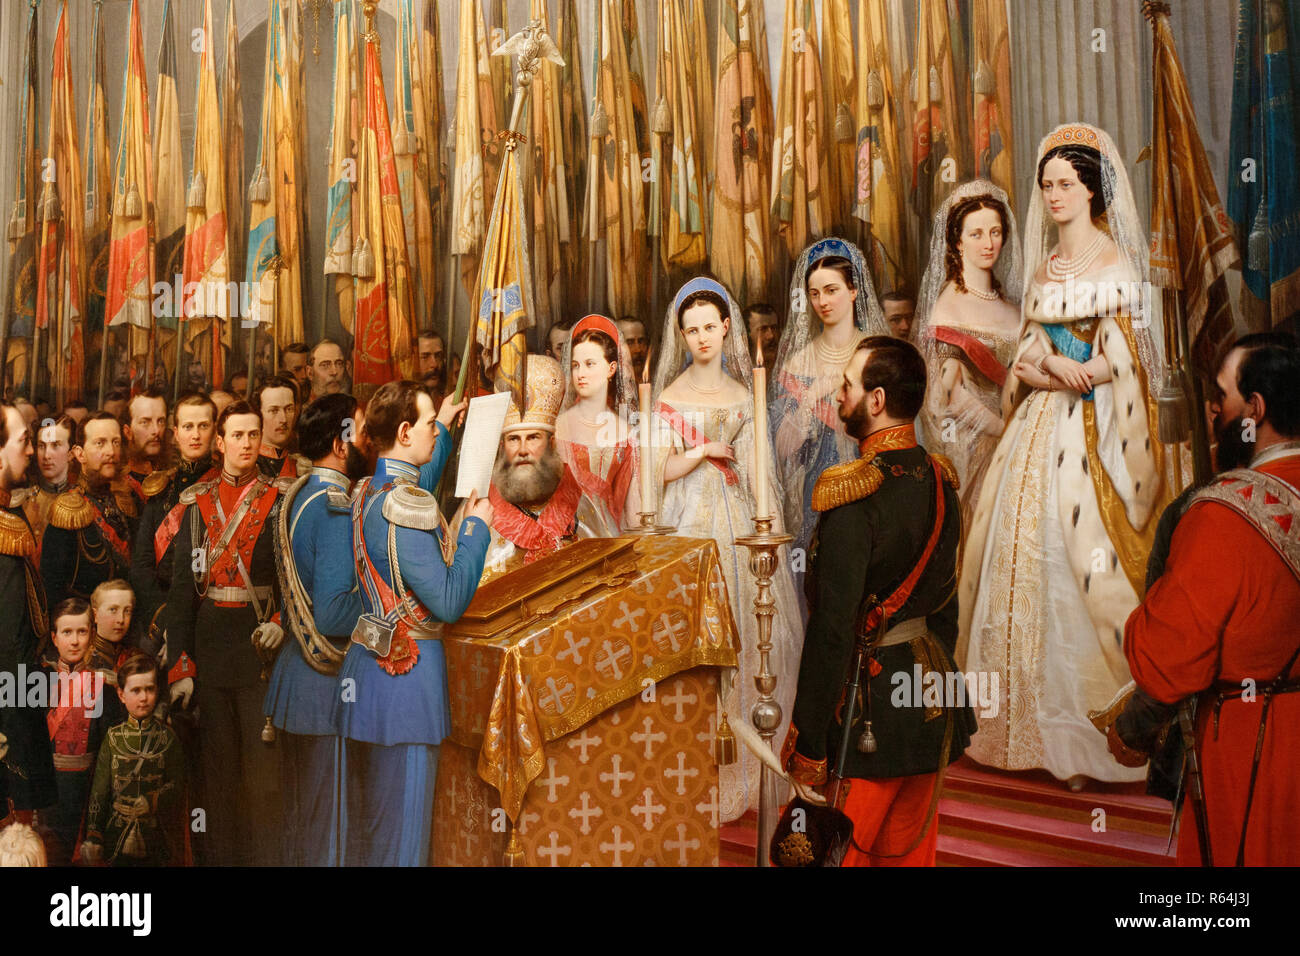 Una sezione di un dipinto della mostra denominata Romanovs a Tsarskoe Selo, che era in mostra al Palazzo di Caterina, San Pietroburgo, Russia. Foto Stock